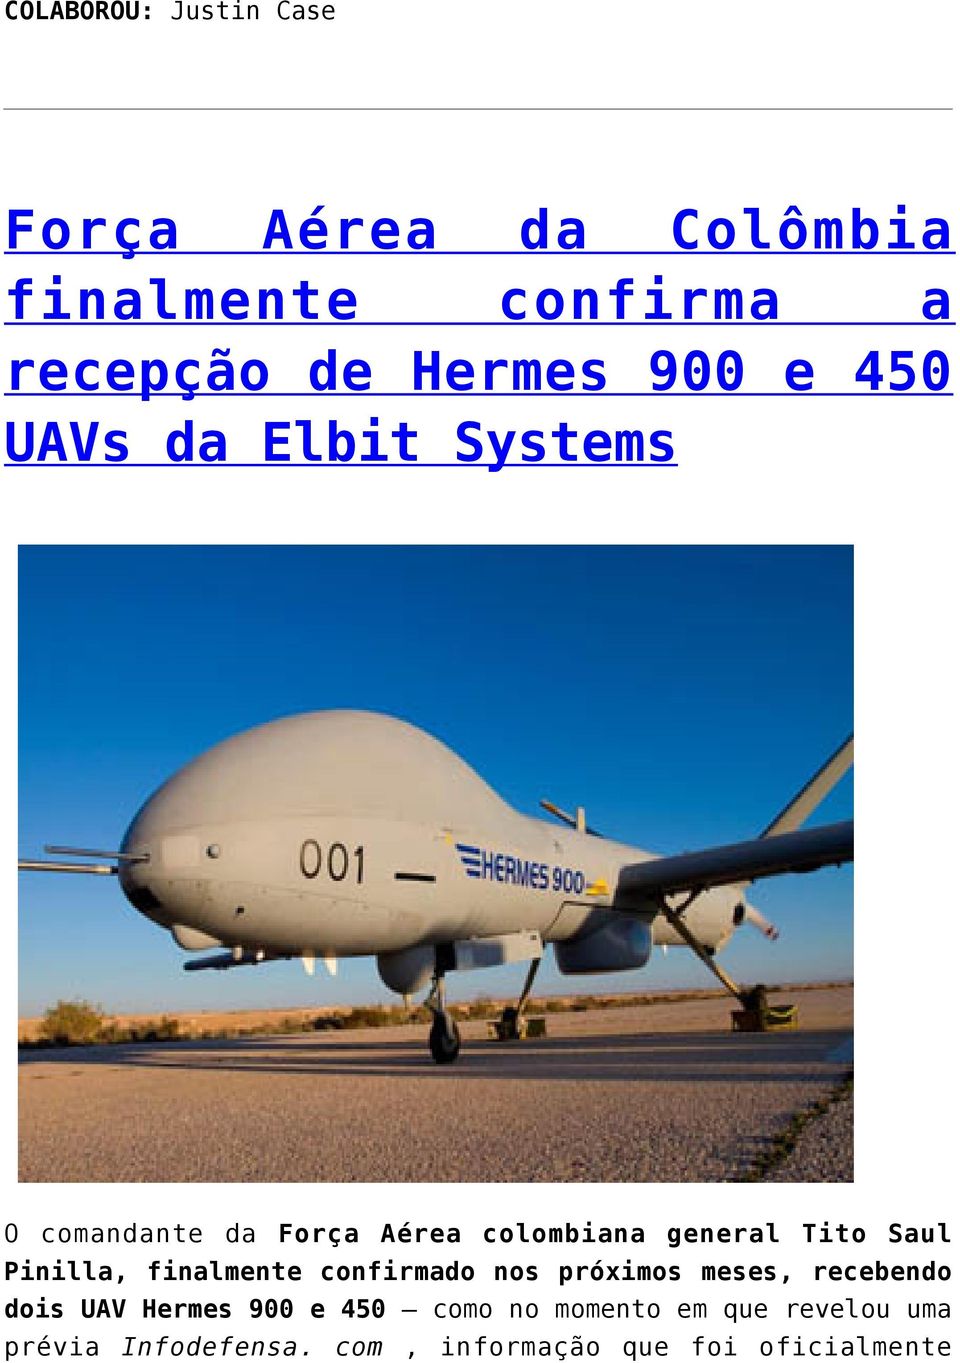 Pinilla, finalmente confirmado nos próximos meses, recebendo dois UAV Hermes 900 e 450